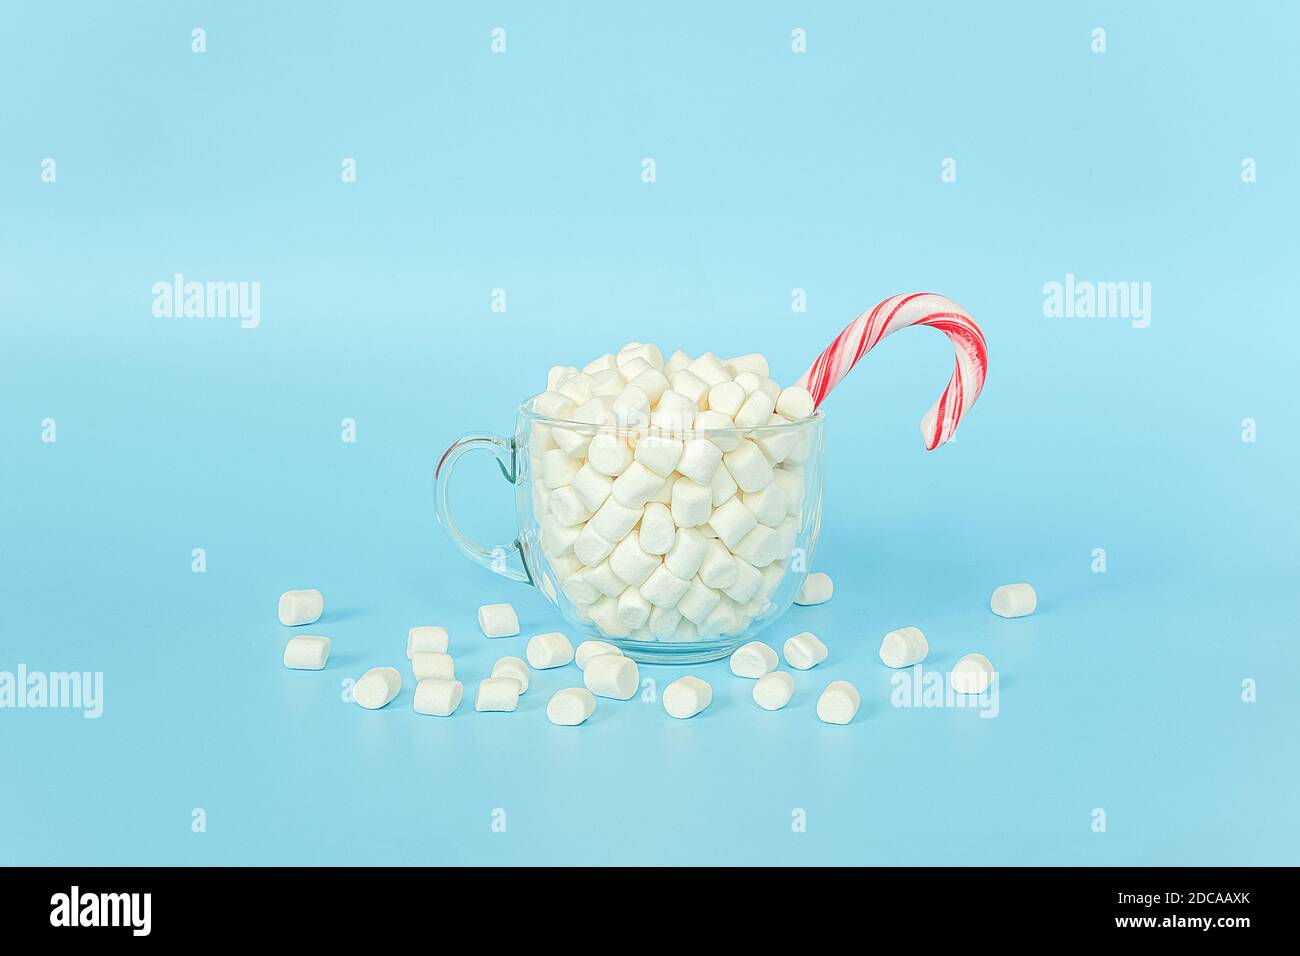 Grande tazza trasparente di marshmallows con canna di lecca rossa su fondo blu. Buon Natale o buon anno concetto. Stile minimal, vista dall'alto, FLA Foto Stock